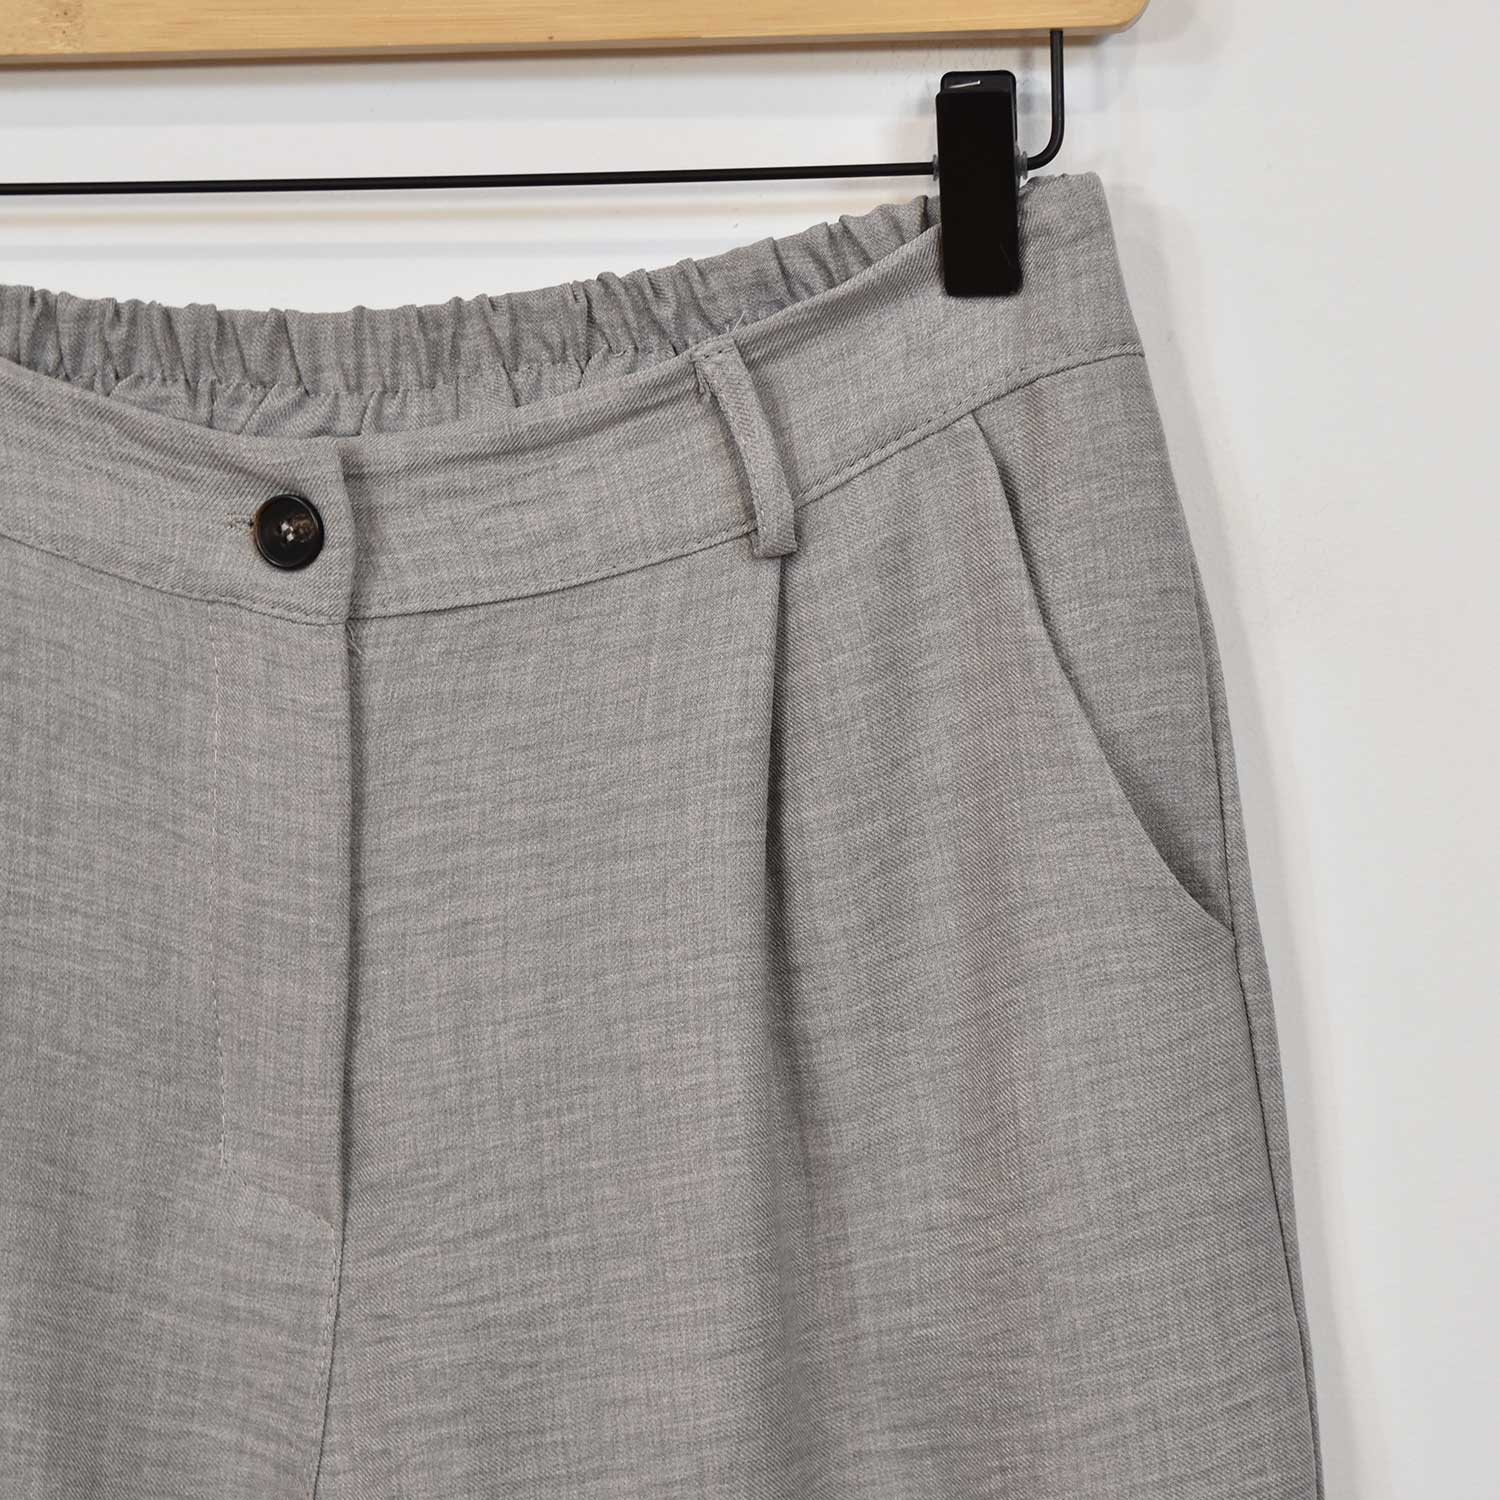 Pantalón liso ancho gris